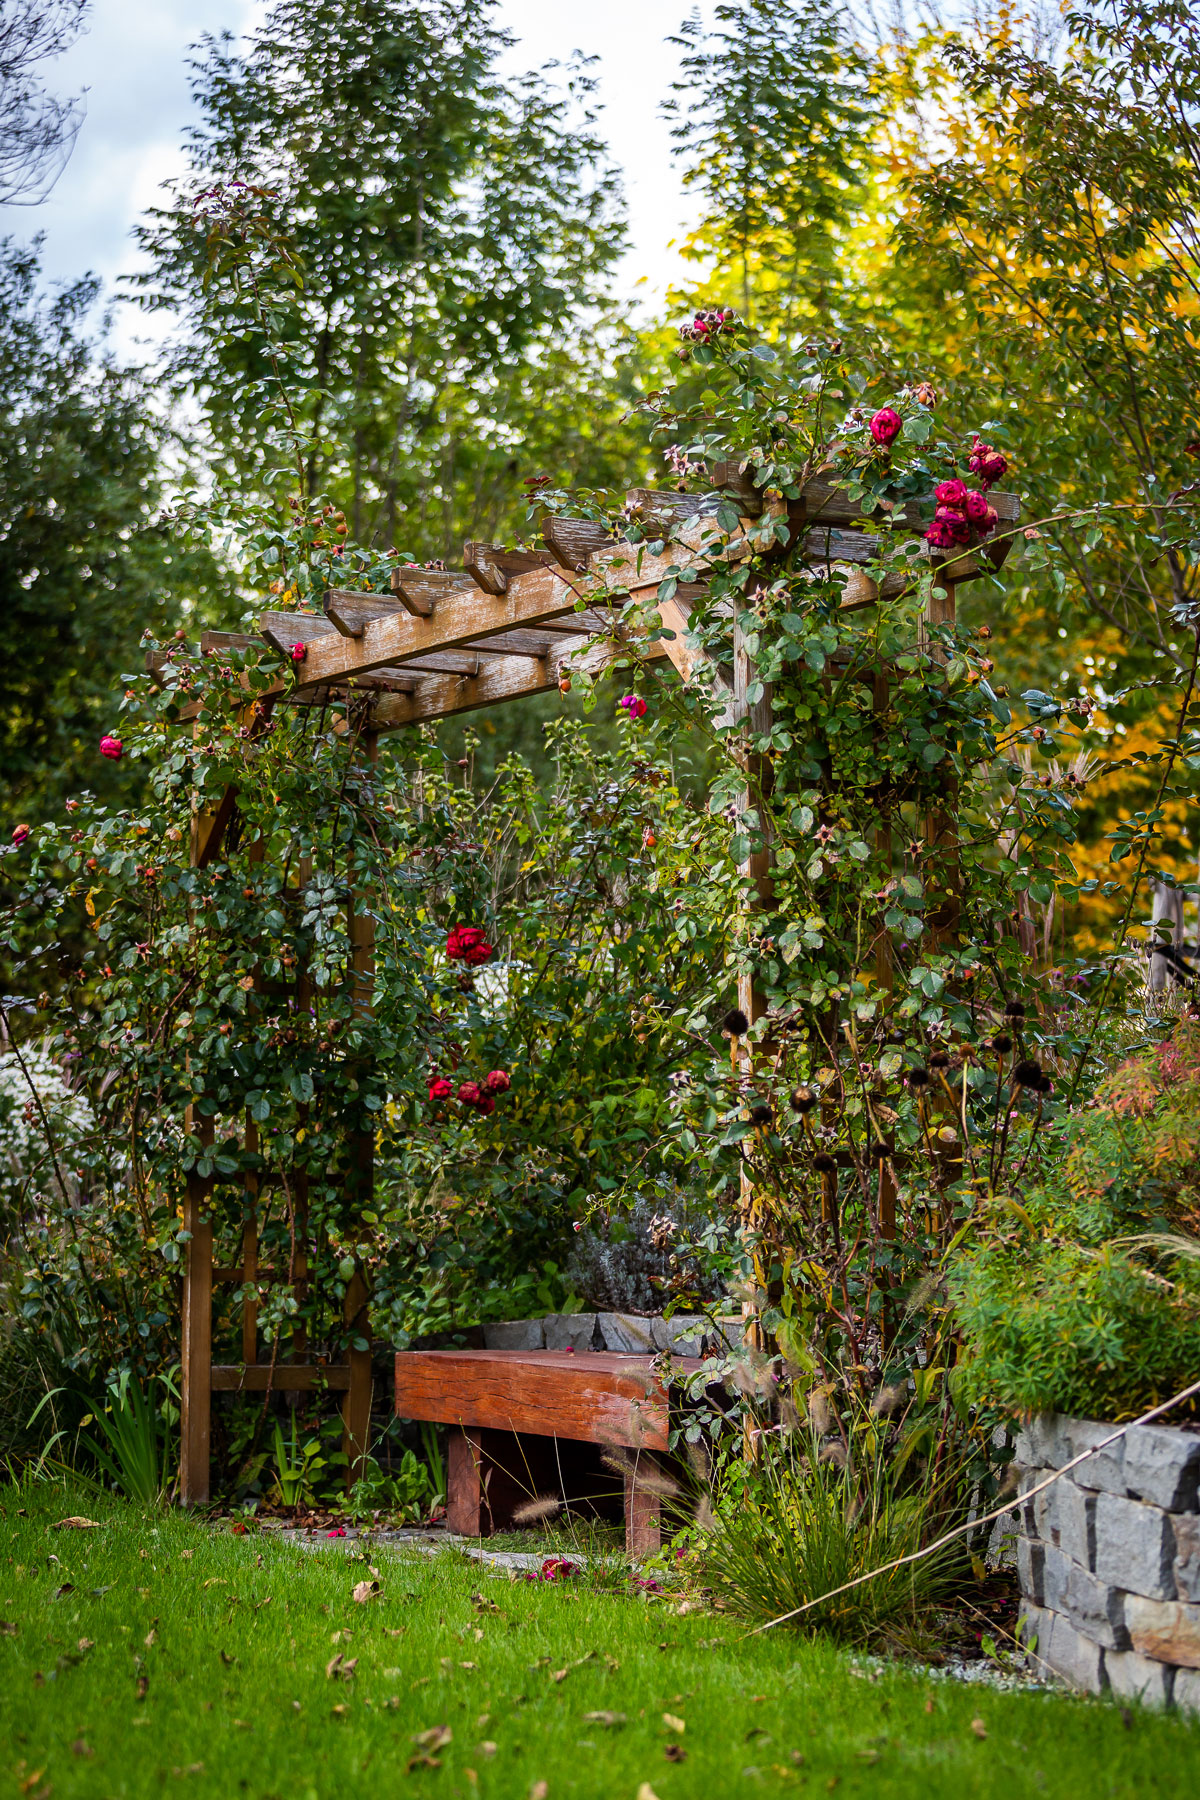 Záhrada vo svahovitom teréne s pergolou so sedením, obrastenou popínavými ružami.